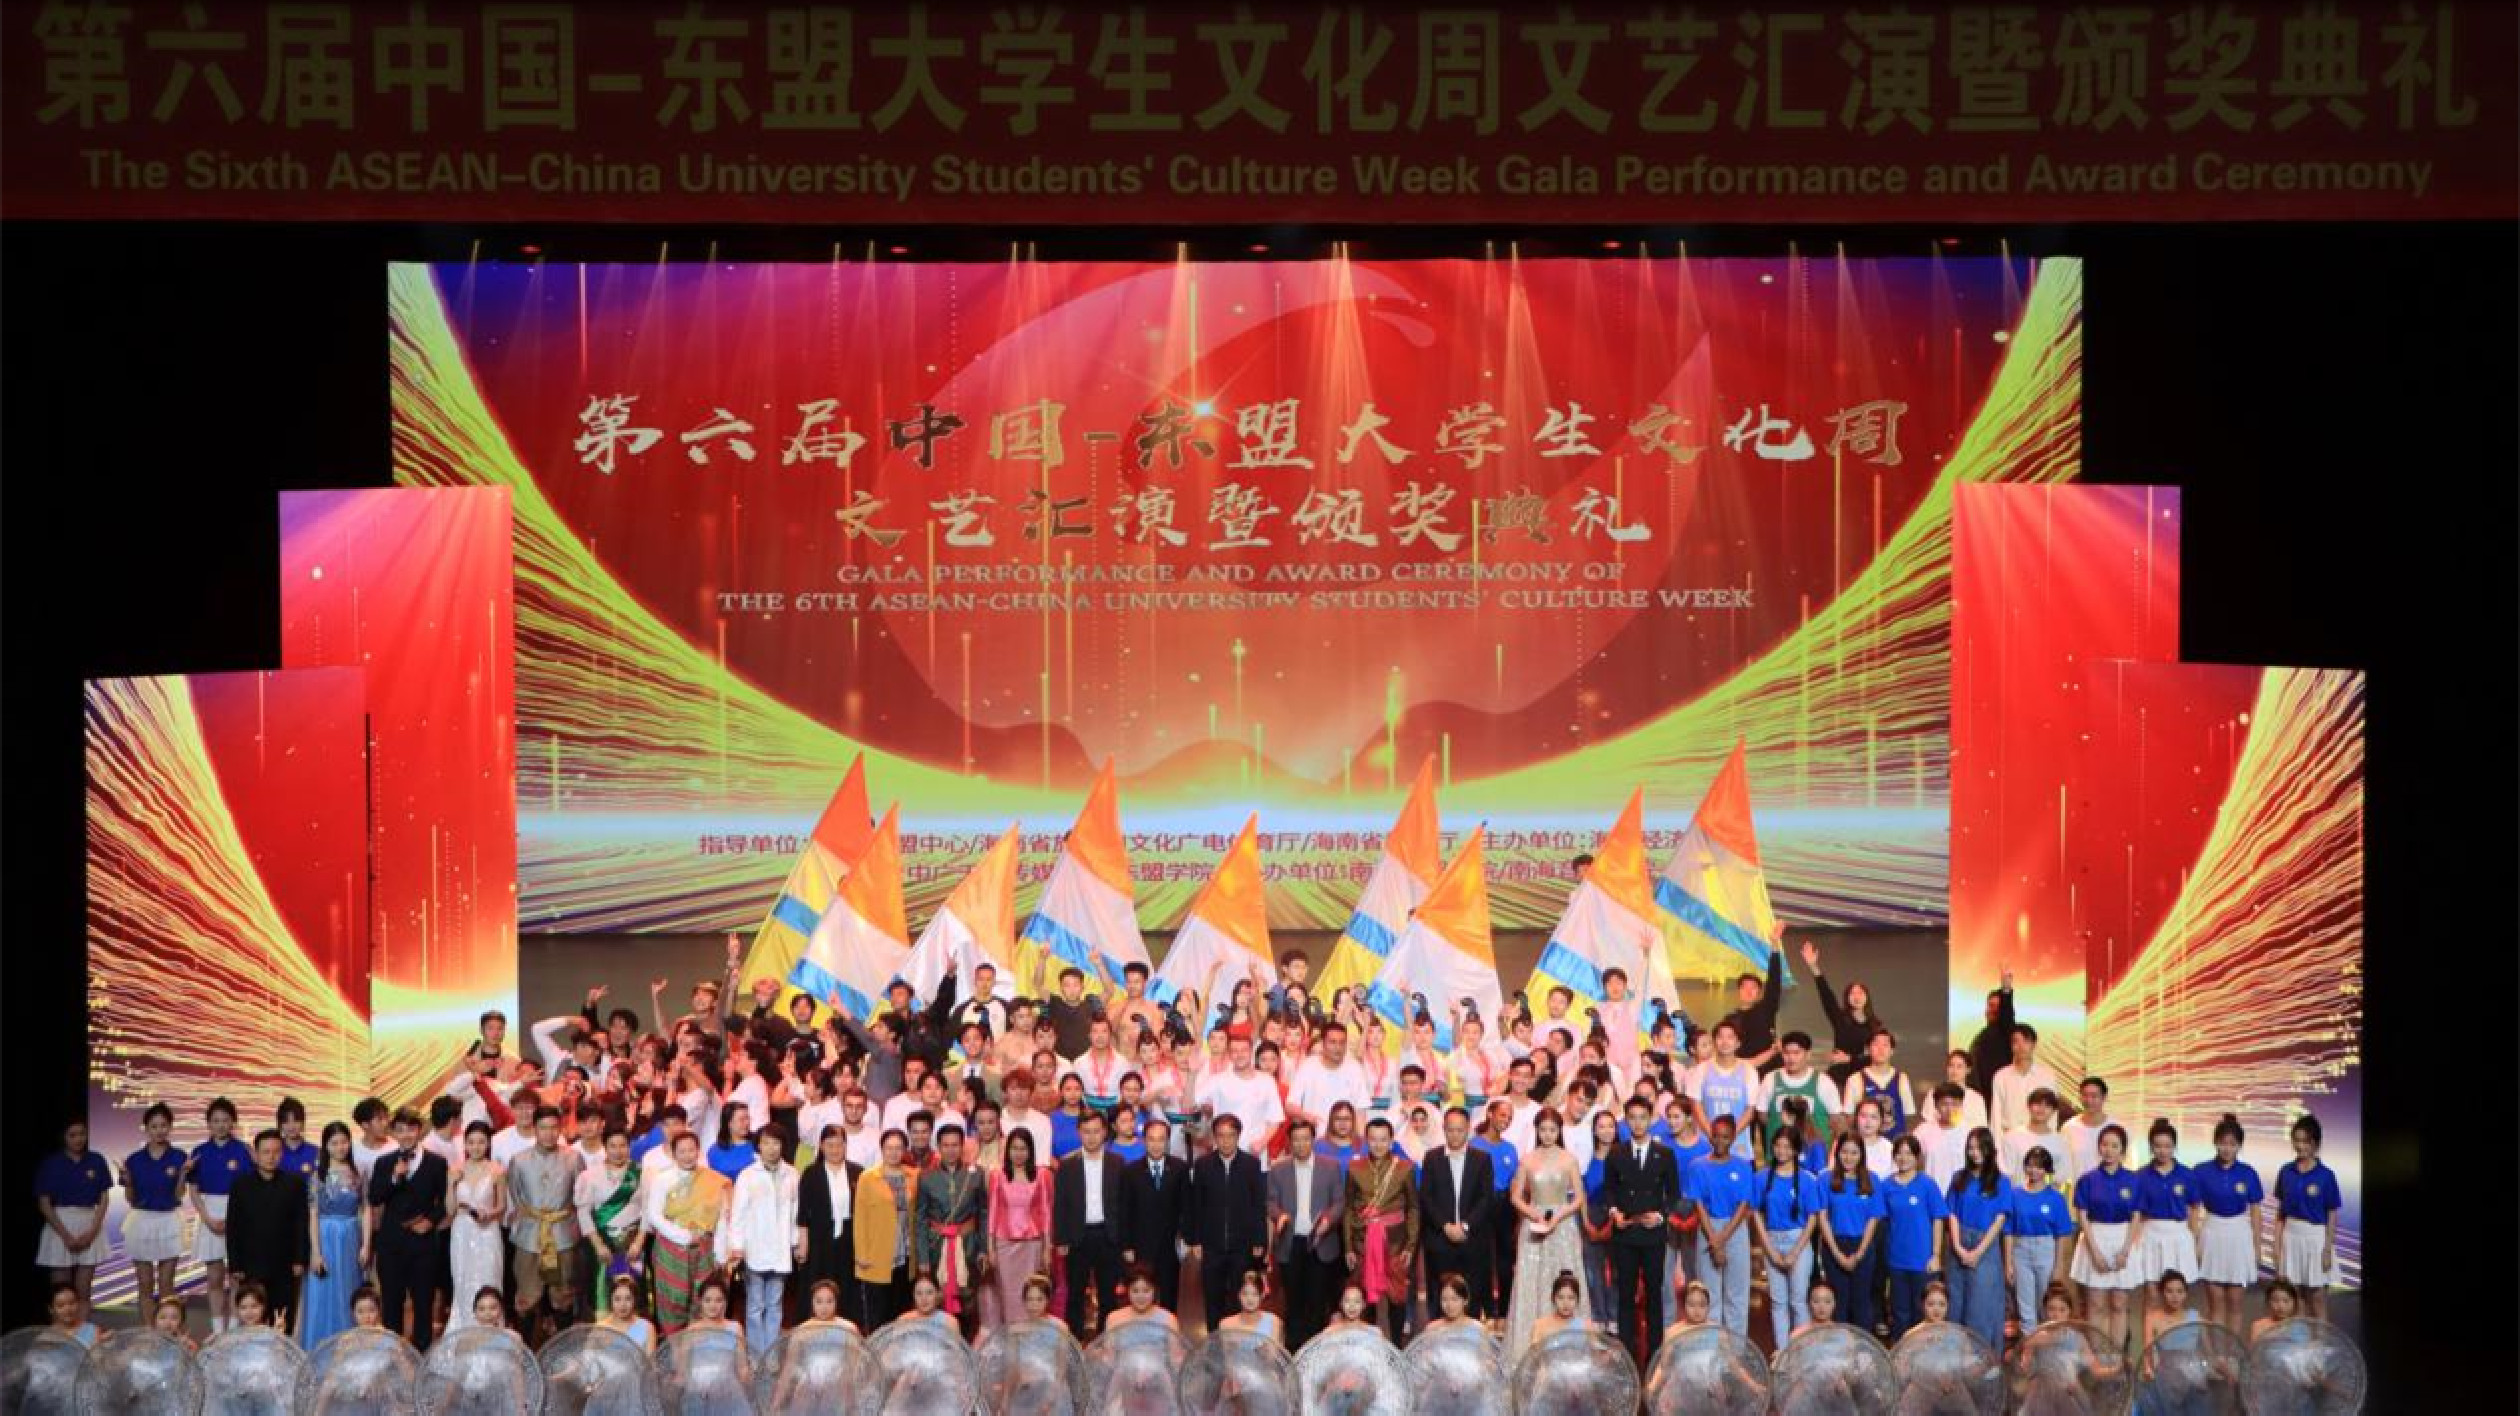 第六屆中國-東盟大學生文化周文藝匯演暨頒獎典禮在海口經濟學院舉行